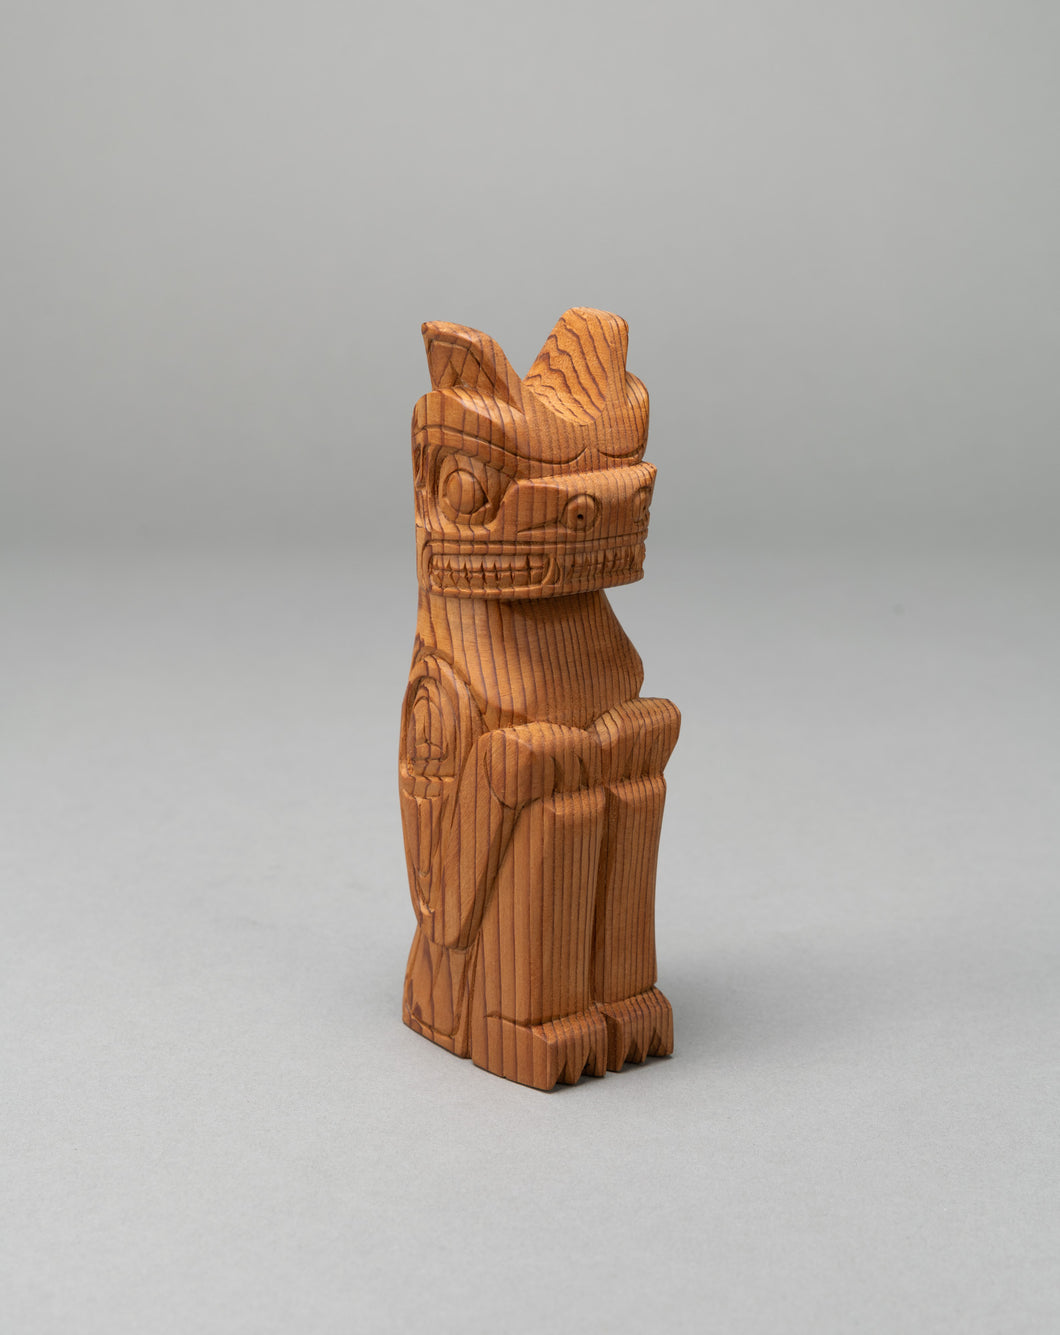 Bear Model Totem, Kwakwaka’wakw Carving